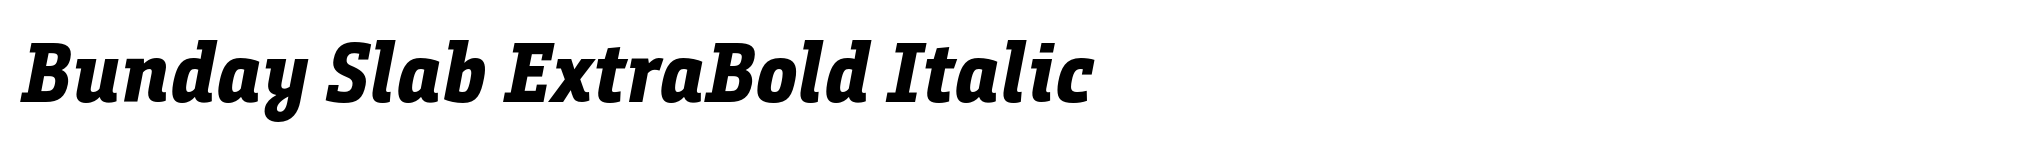 Bunday Slab ExtraBold Italic image